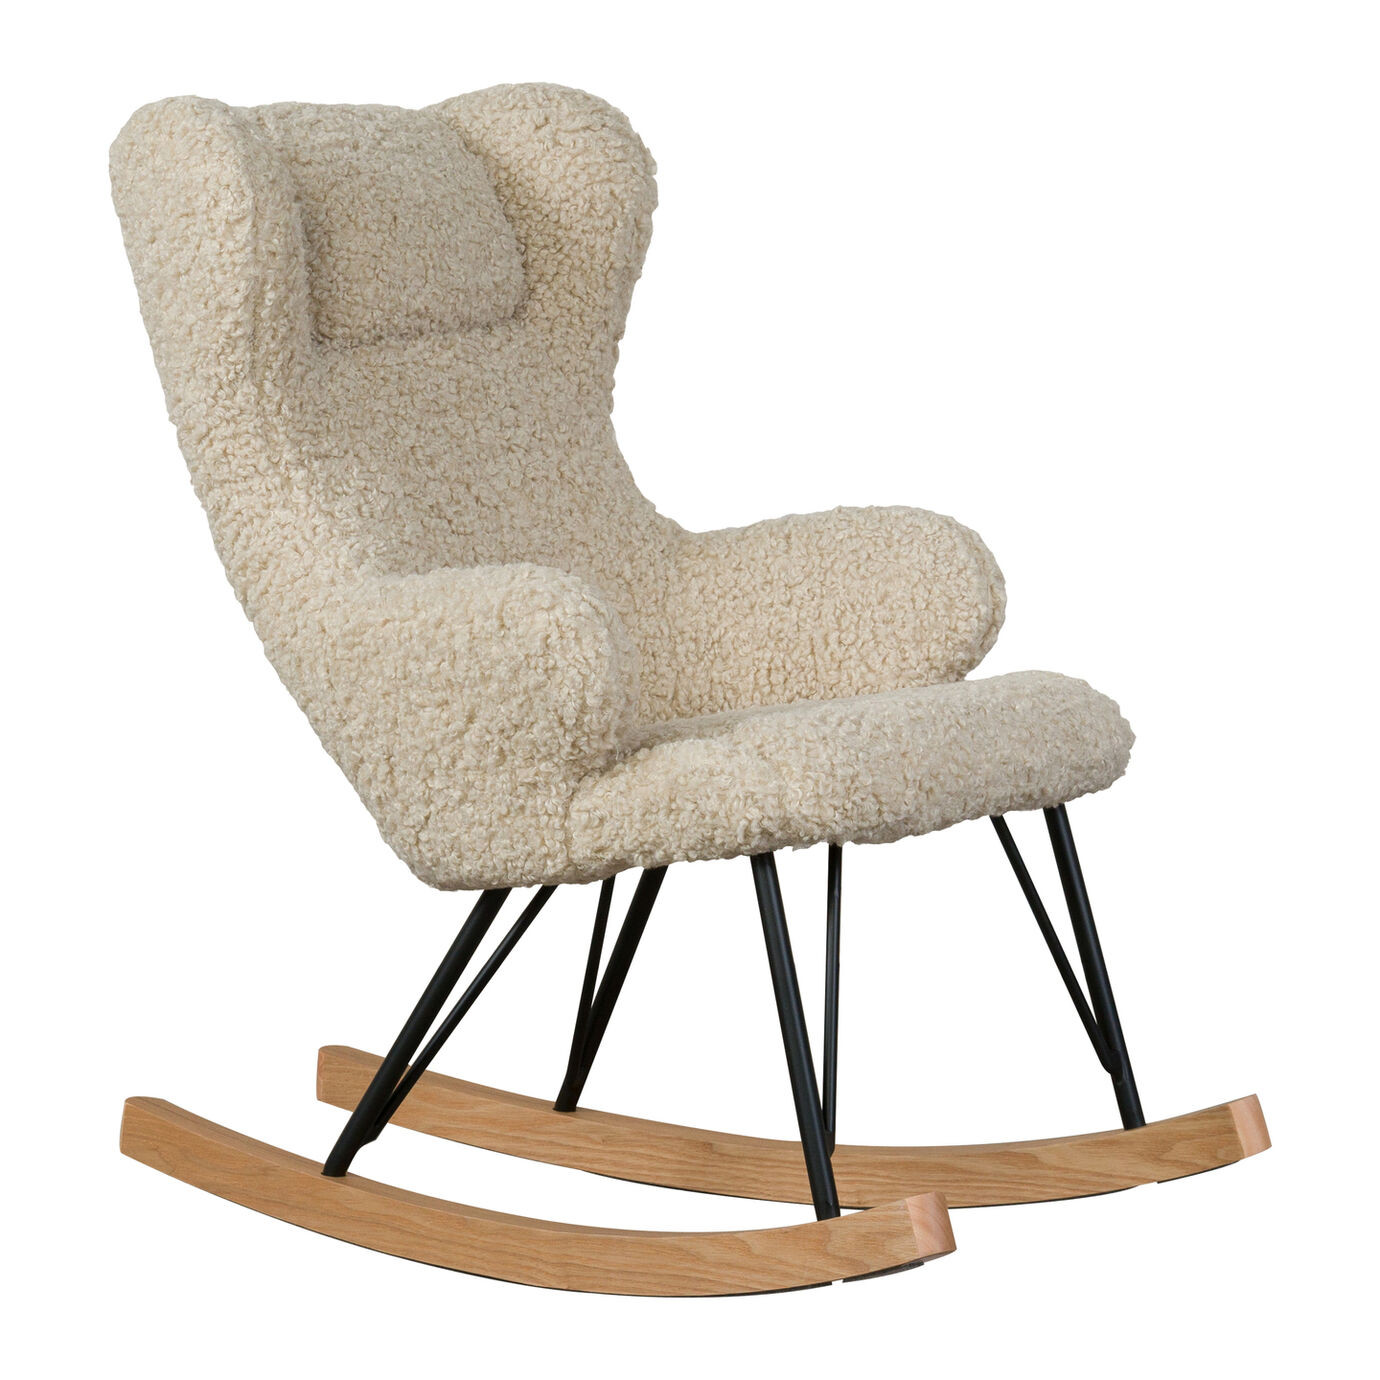 Sheep - Rocking Chair De...